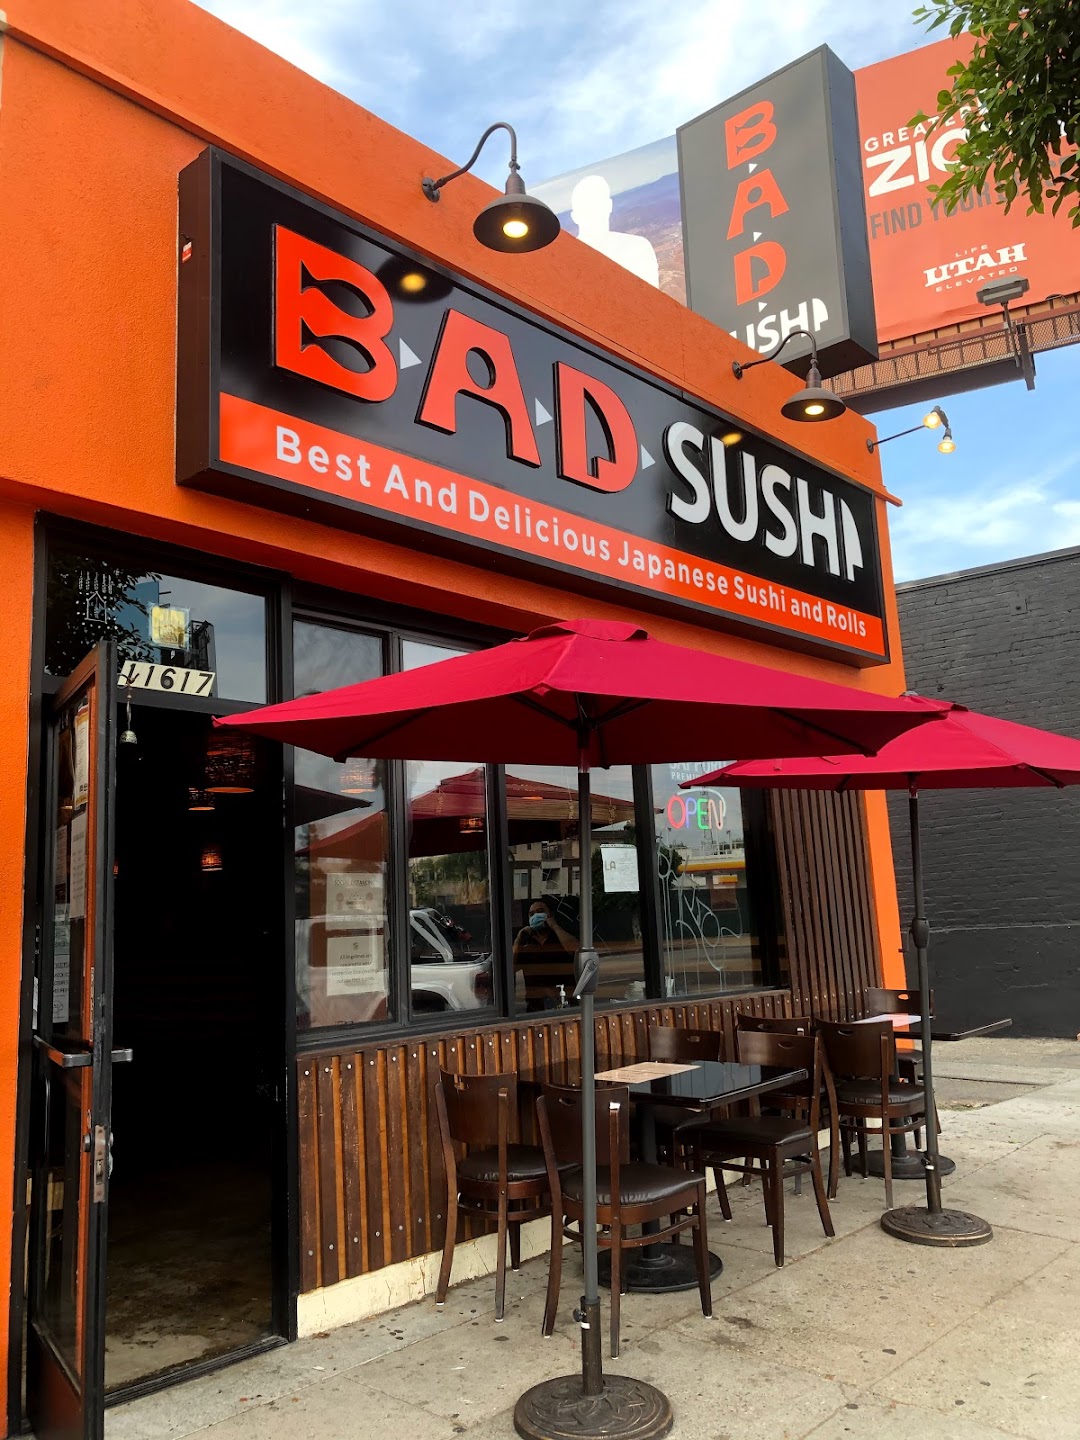 B.A.D. Sushi